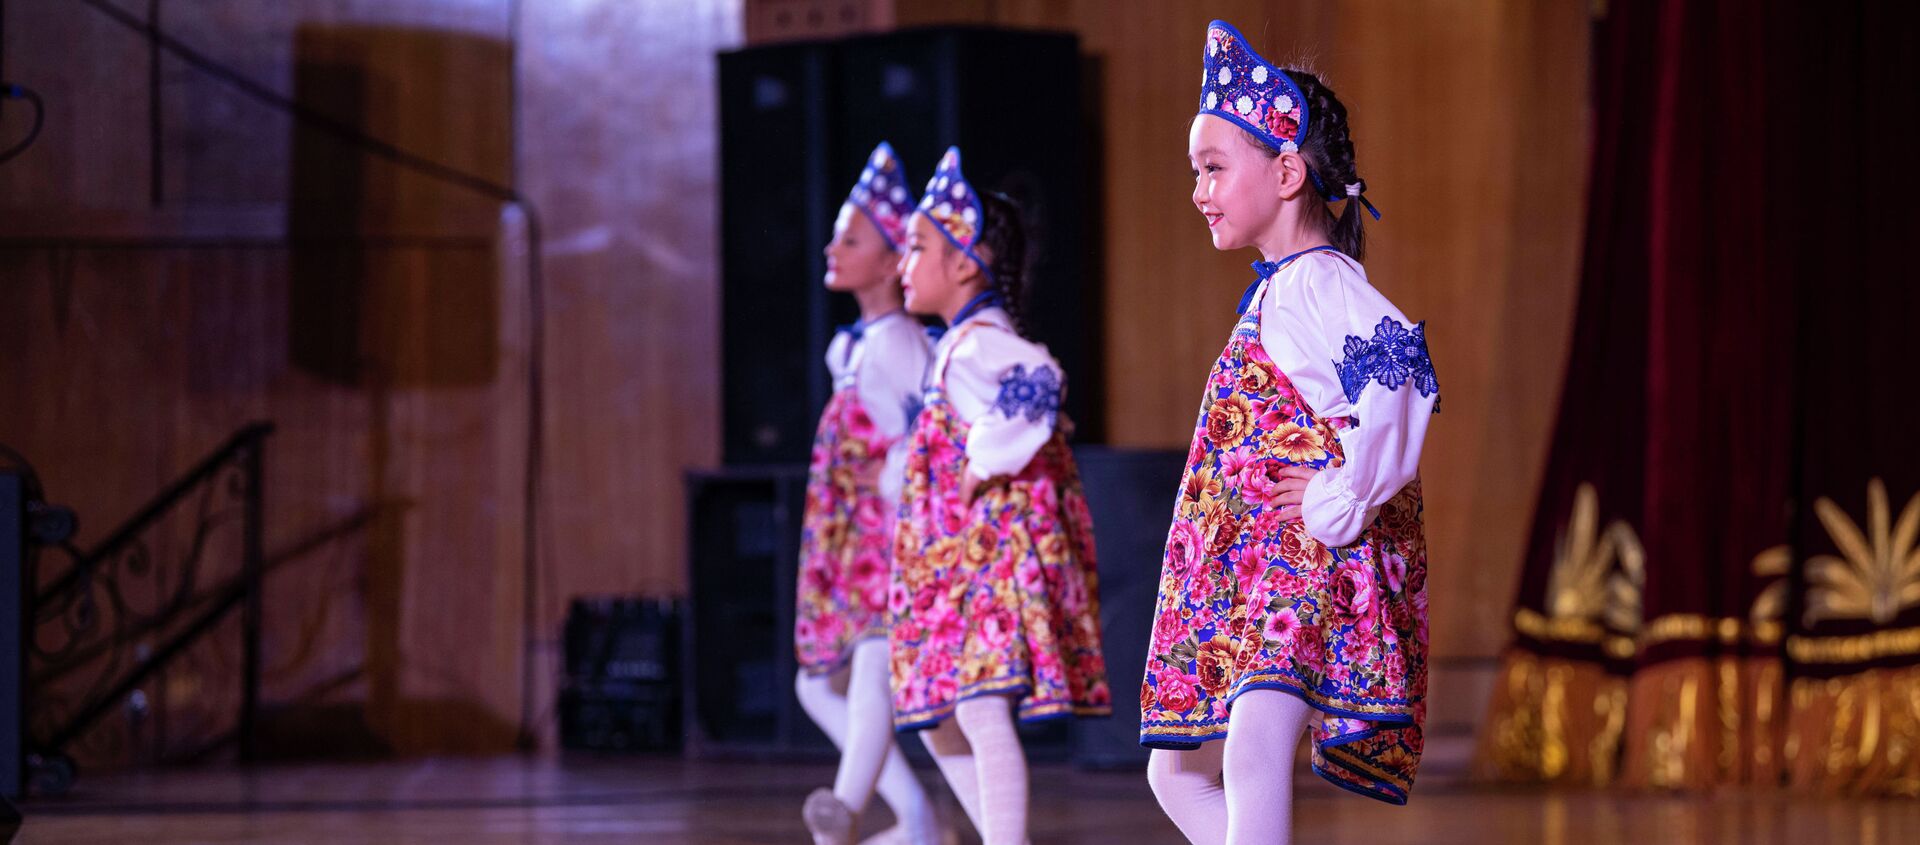 Музыкальный фестиваль детских творческих коллективов Карусель в Бишкеке - Sputnik Кыргызстан, 1920, 15.11.2021